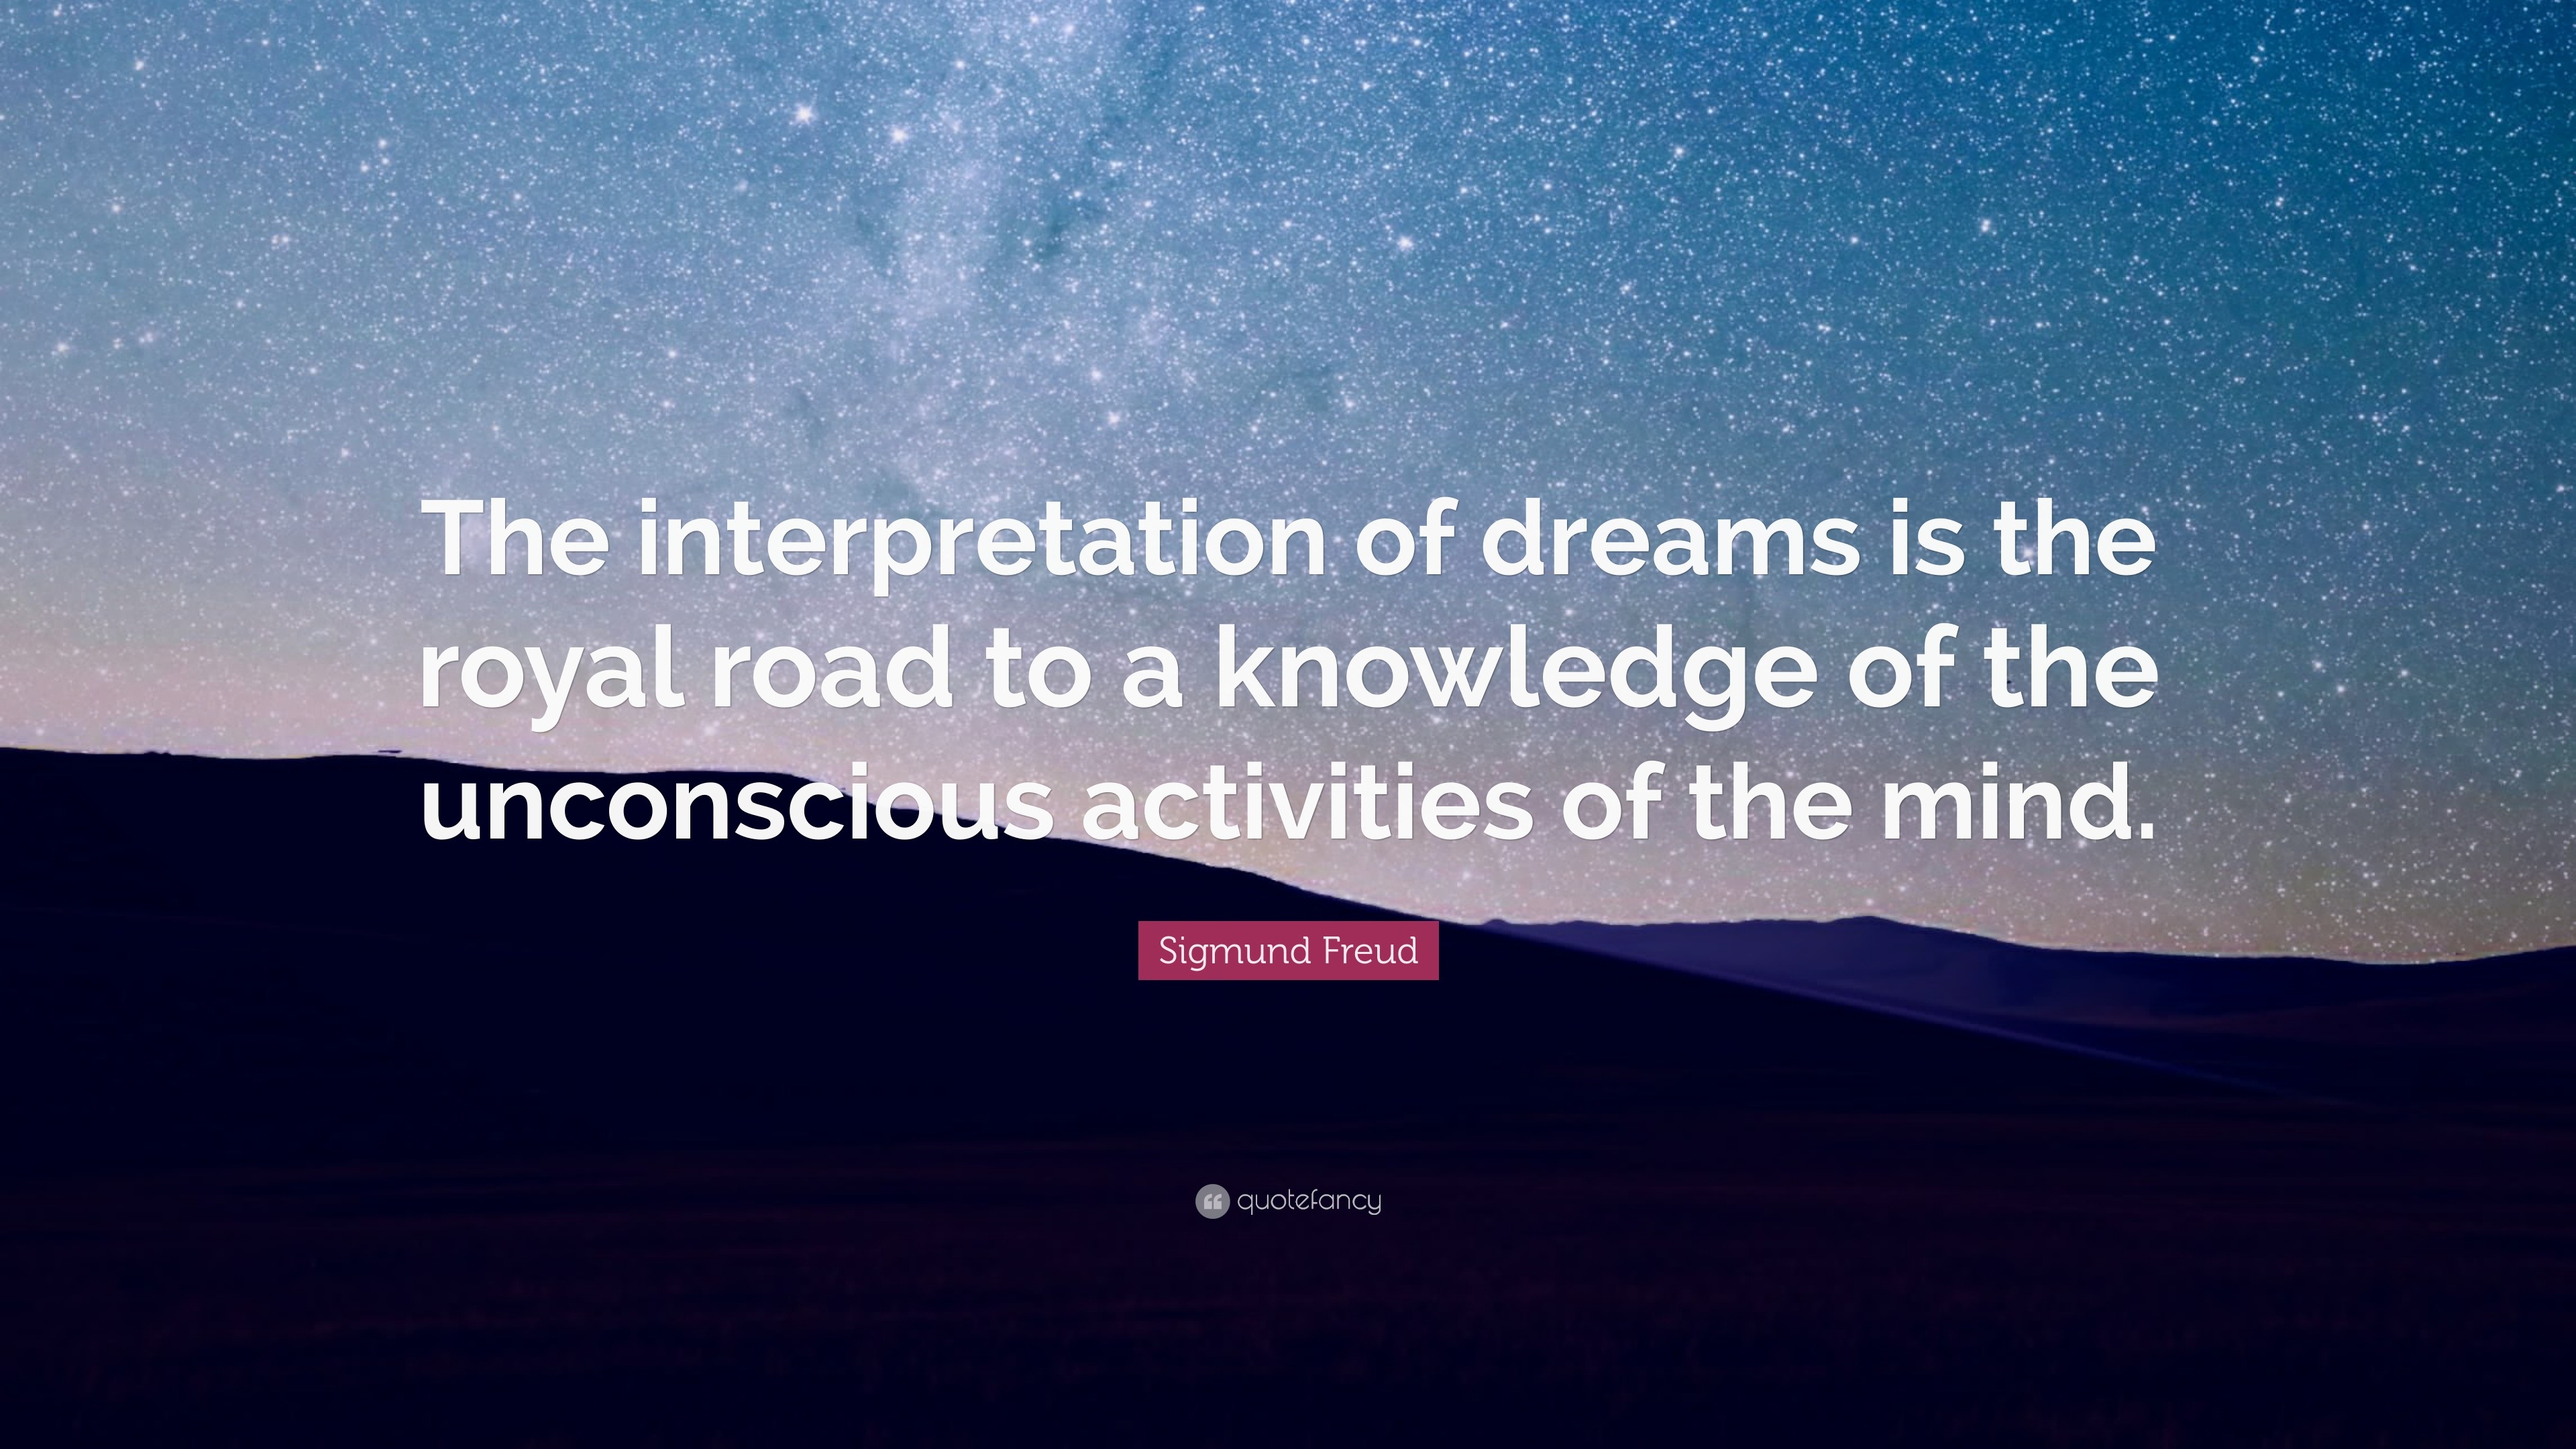 The Interpretation of Dreams by Sigmund Freud